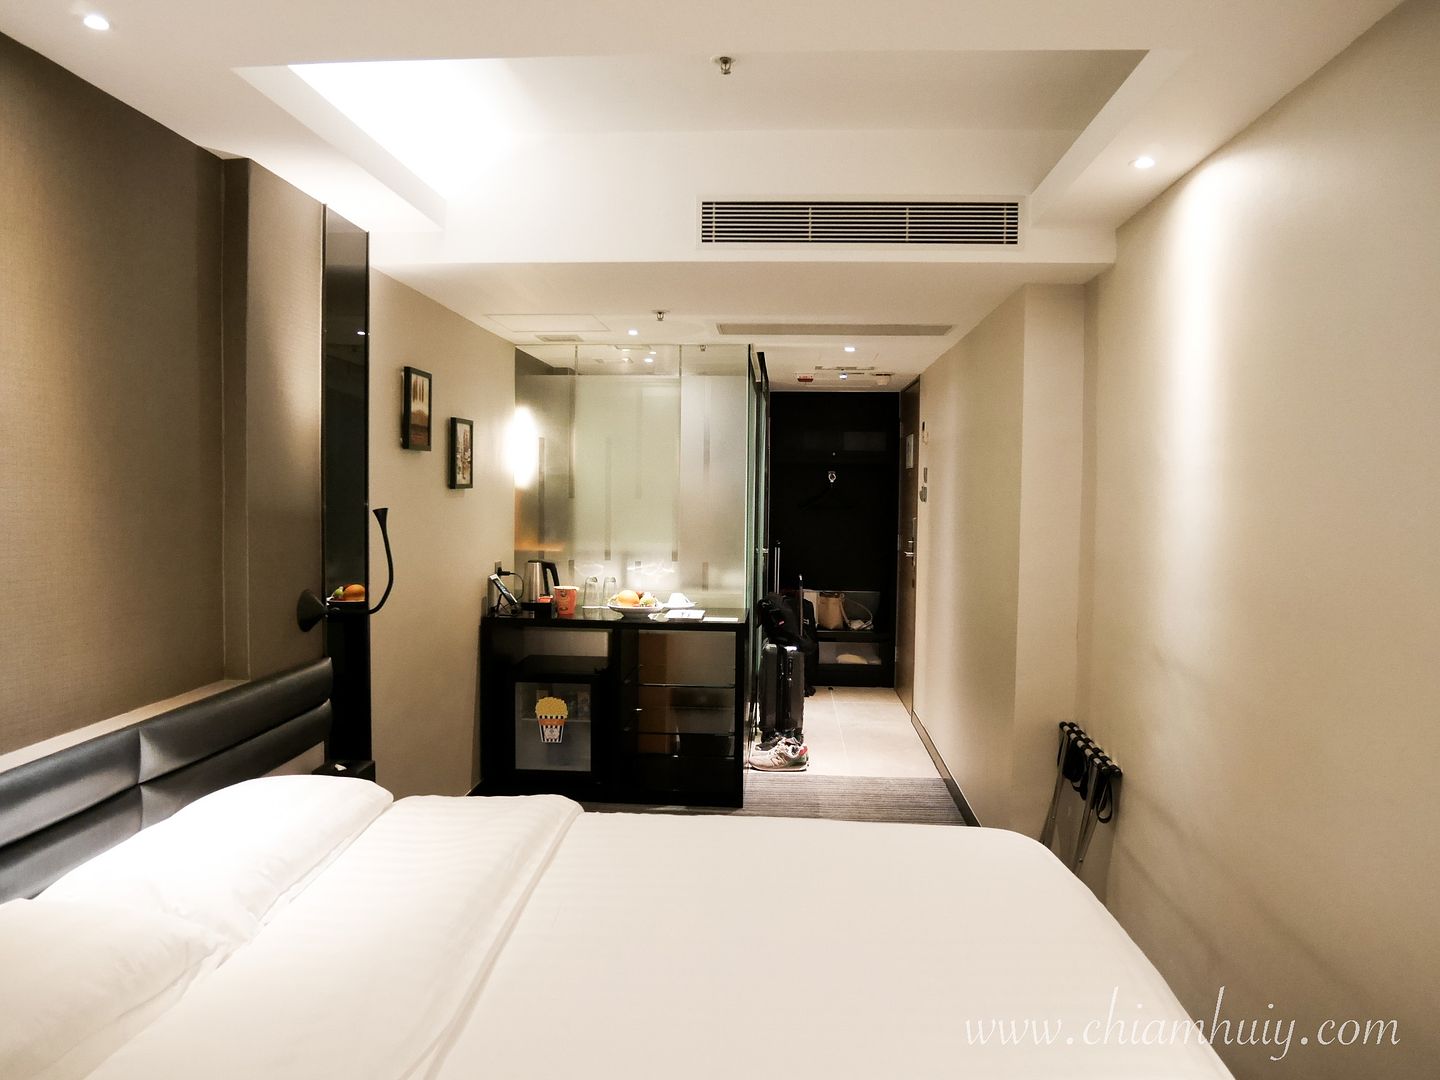  photo Hongkong Hotel Review_29_zpsze1jc9bs.jpg